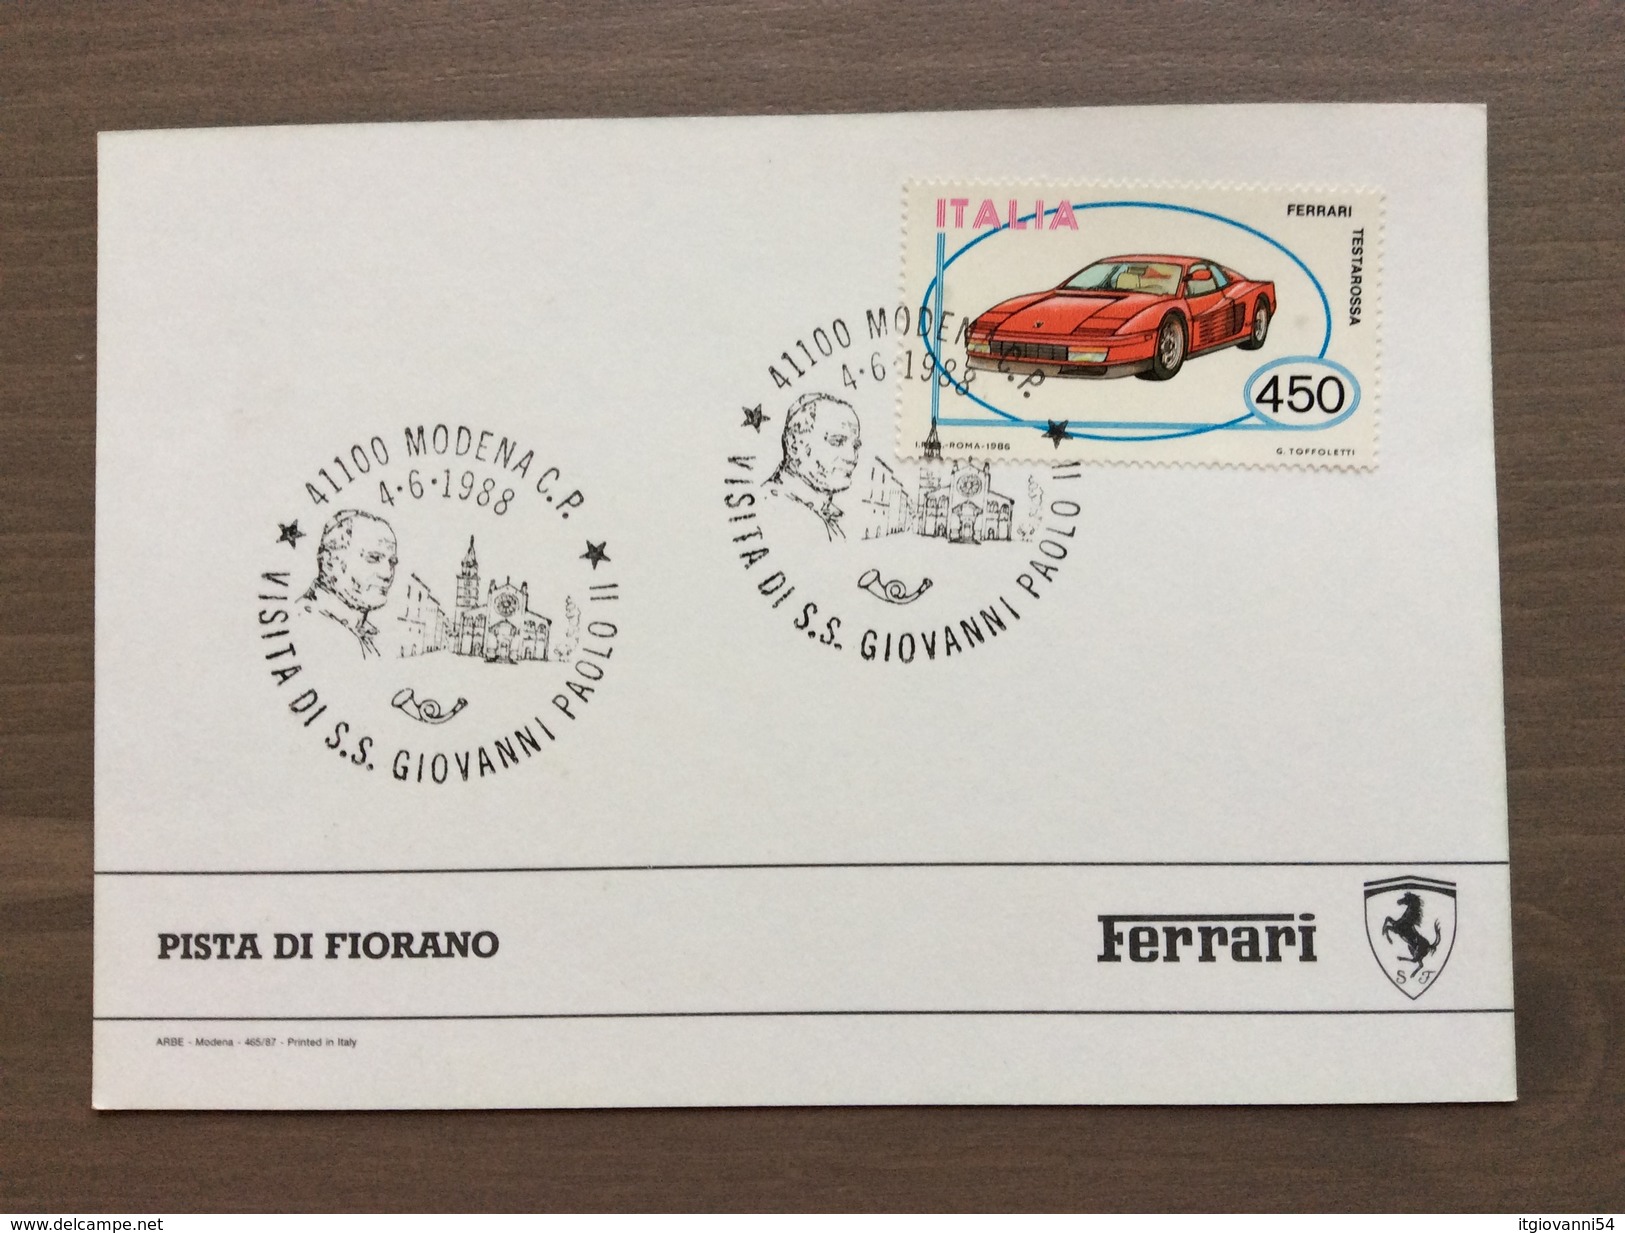 Cartolina Aerea Pista Ferrari Di Fiorano Sul Retro Annullo Francobollo Testarossa Visita Papa Giovanni Paolo II 4-6-1988 - Grand Prix / F1